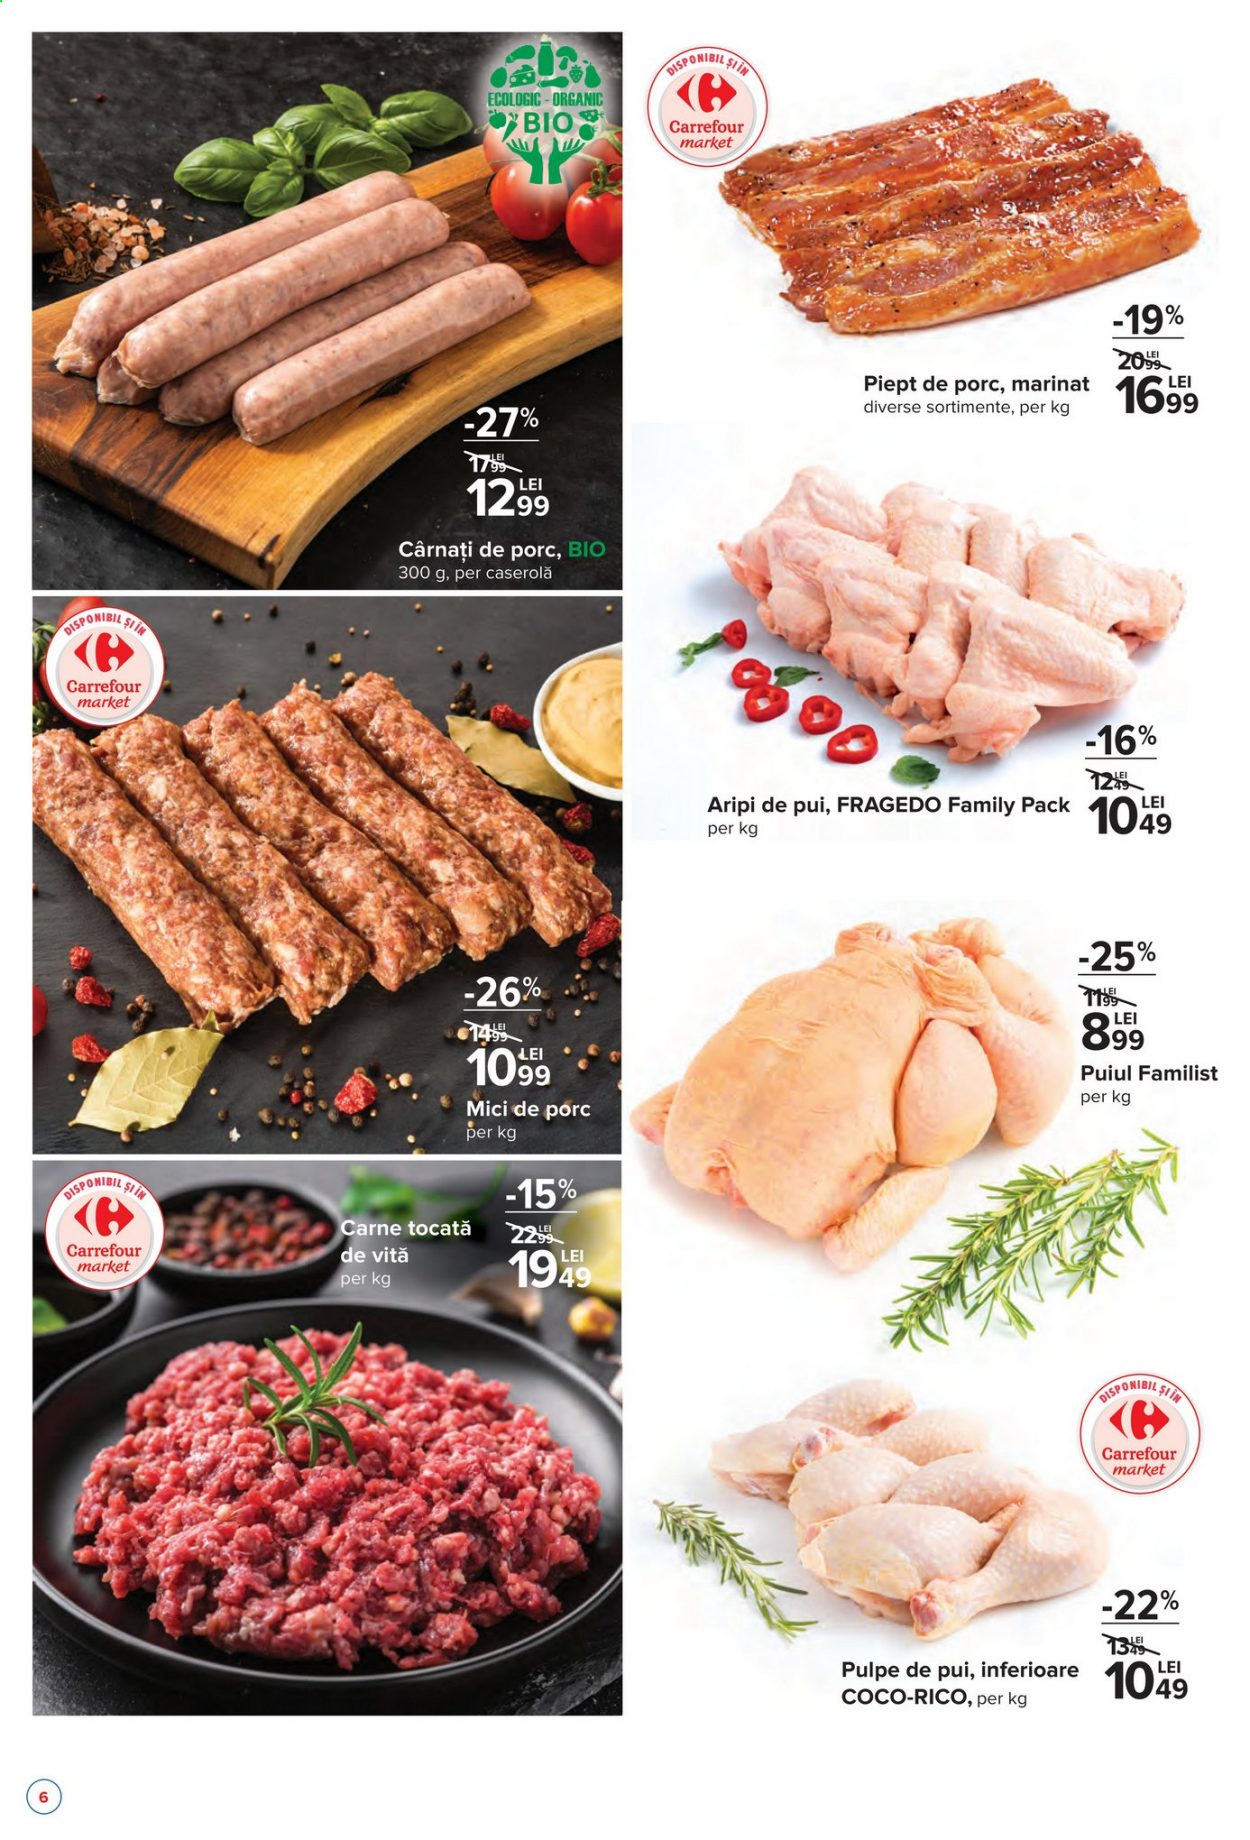 thumbnail - Cataloage Carrefour - 08.04.2021 - 14.04.2021 - Produse în vânzare - cârnați de porc, mici de porc, piept de porc. Pagina 4.